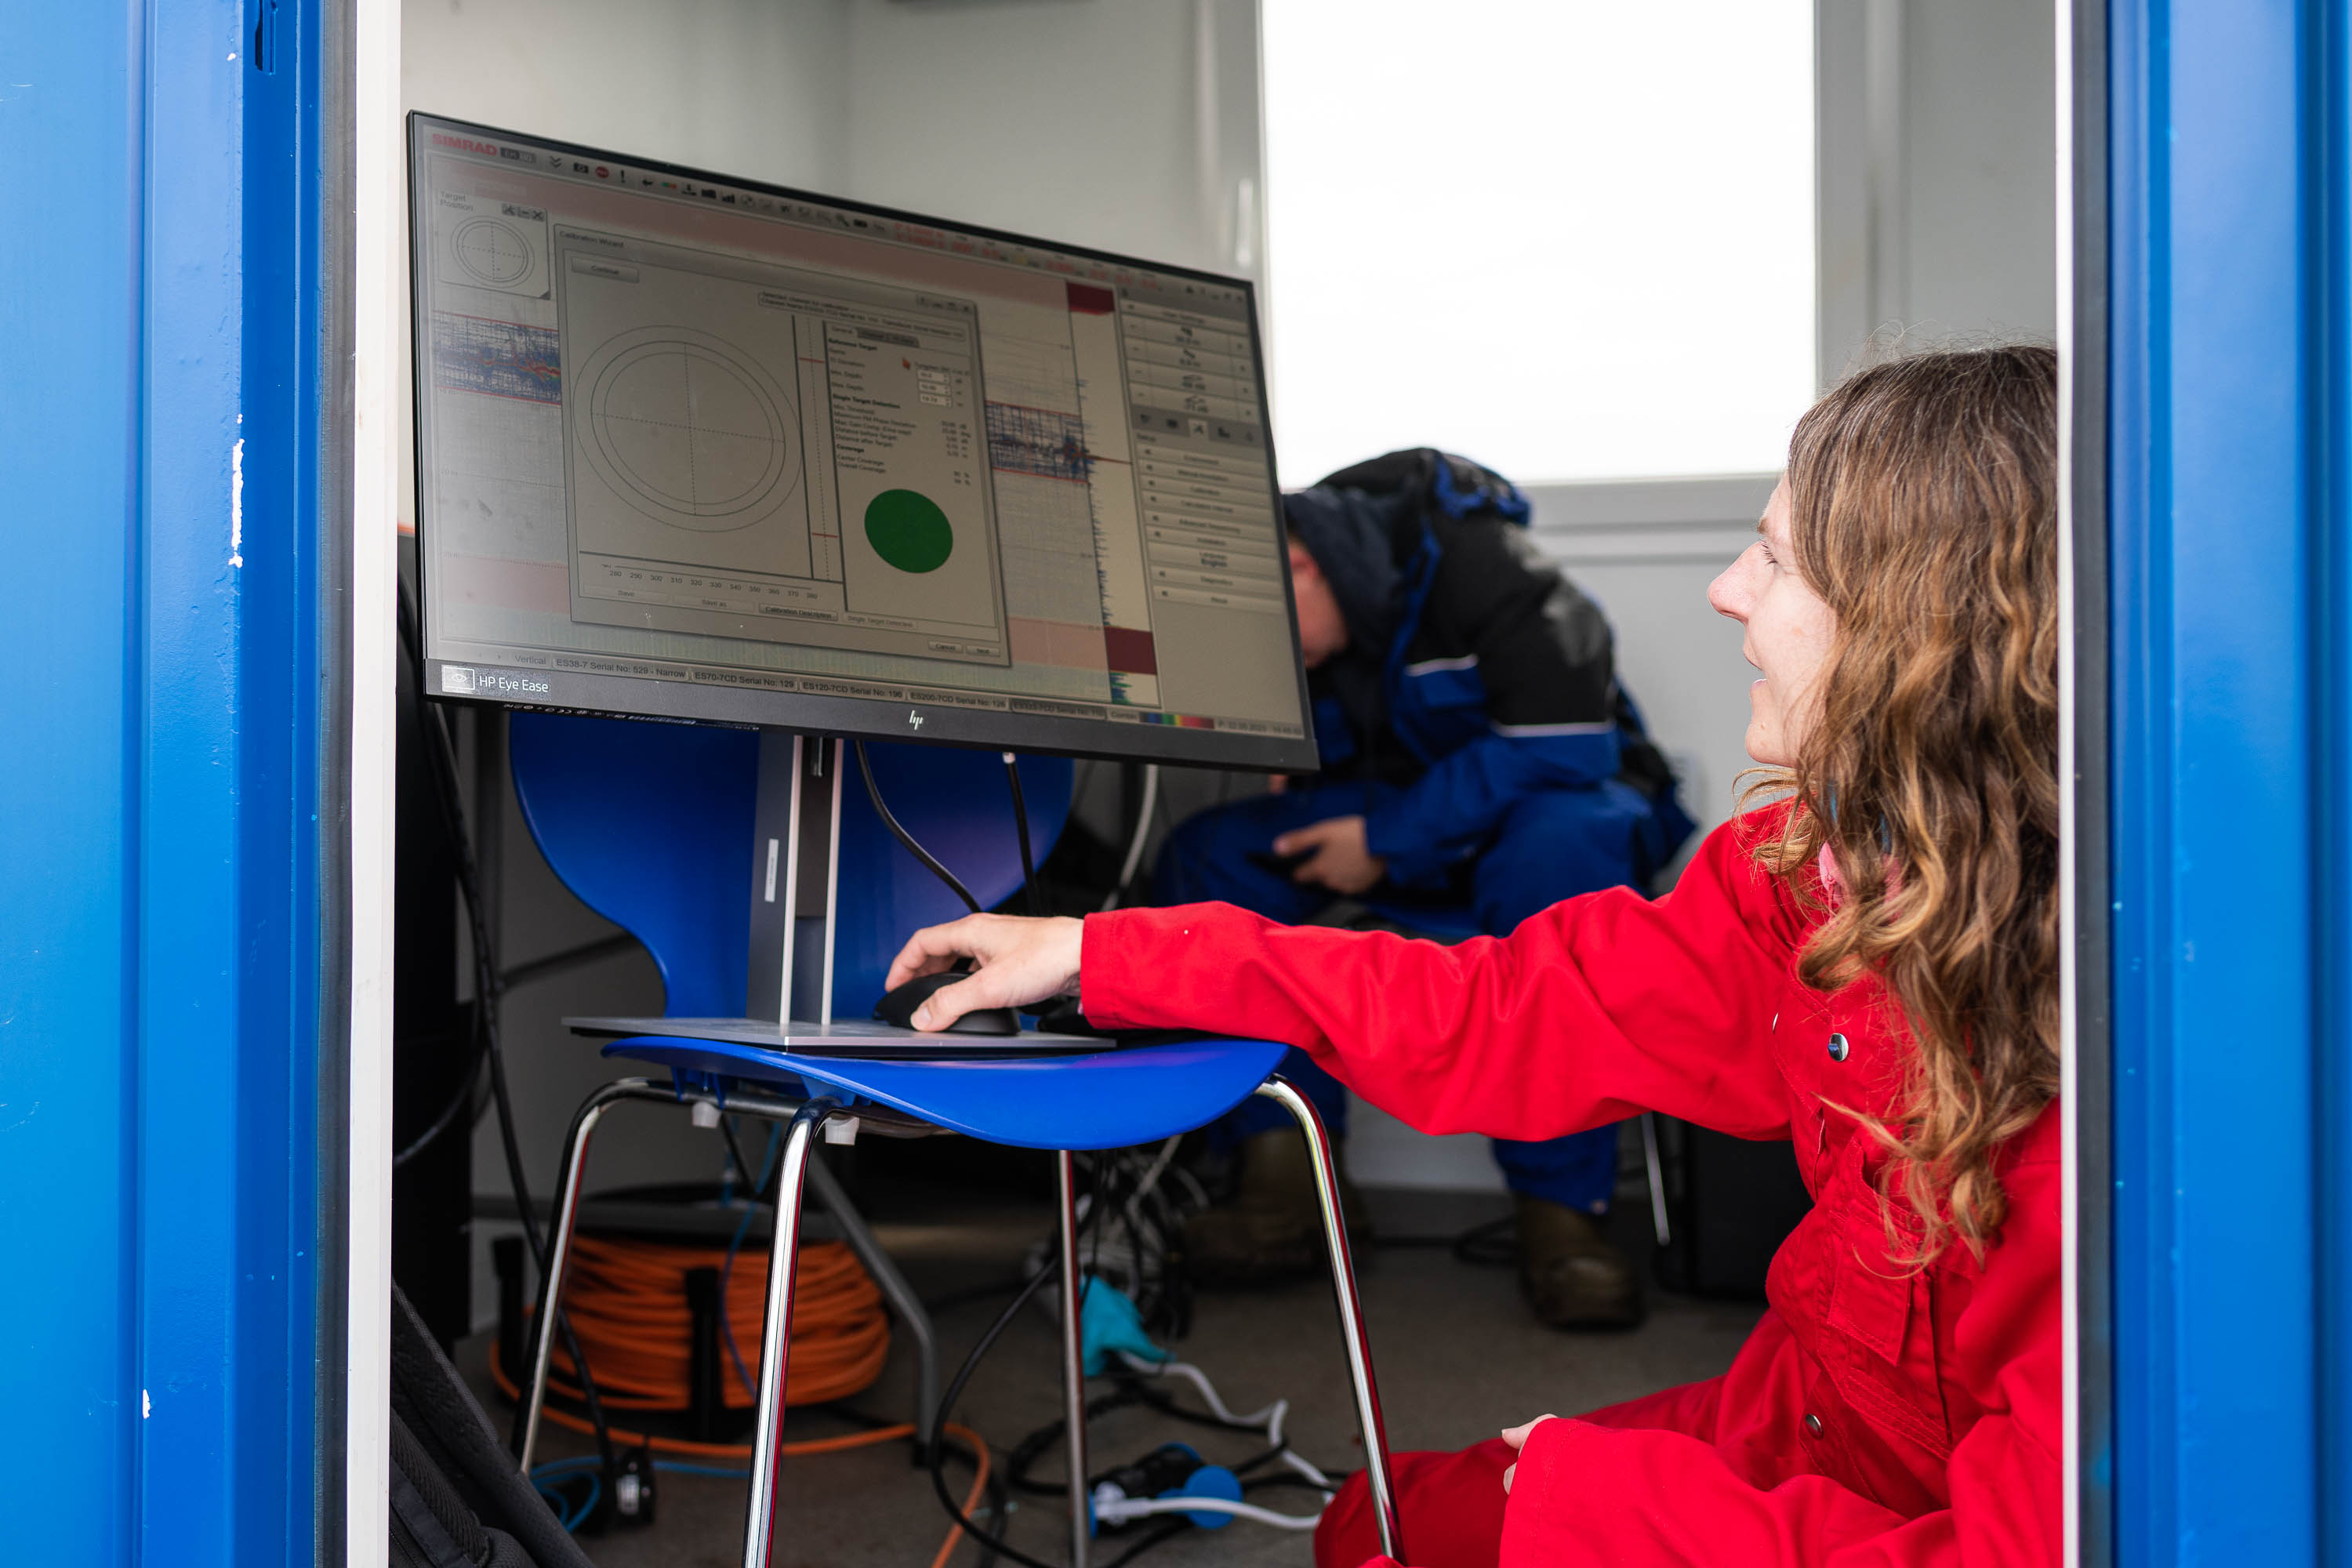 Ei kvinne i raud kjeledress sit på hug framfor ein dataskjerm. Dataskjermen står på ein stol, rett innanfor døra i ein kontainer.